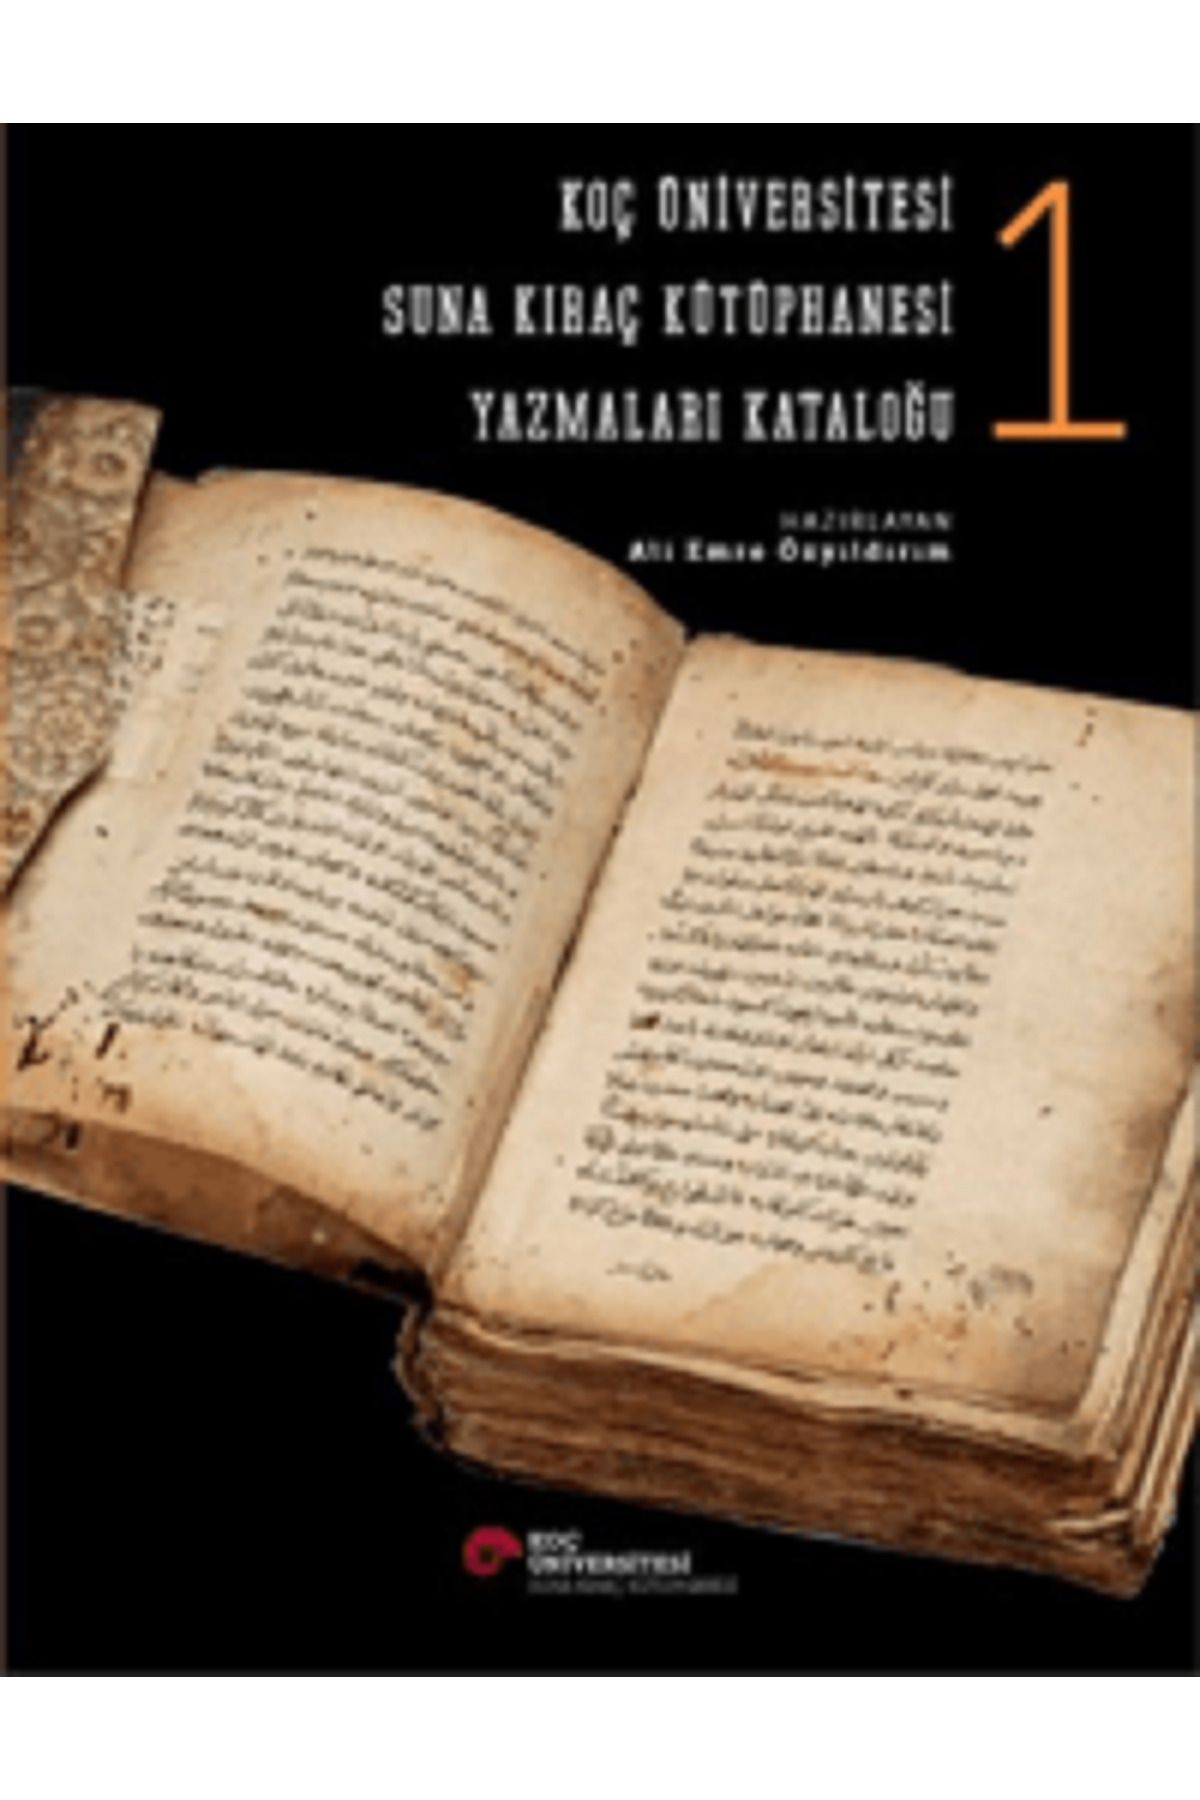 Koç Üniversitesi Yayınları Koç Üniversitesi Suna Kıraç Kütüphanesi Yazmalar Kataloğu 1-2  (2 CİLT TAKIM /CİLTLİ )